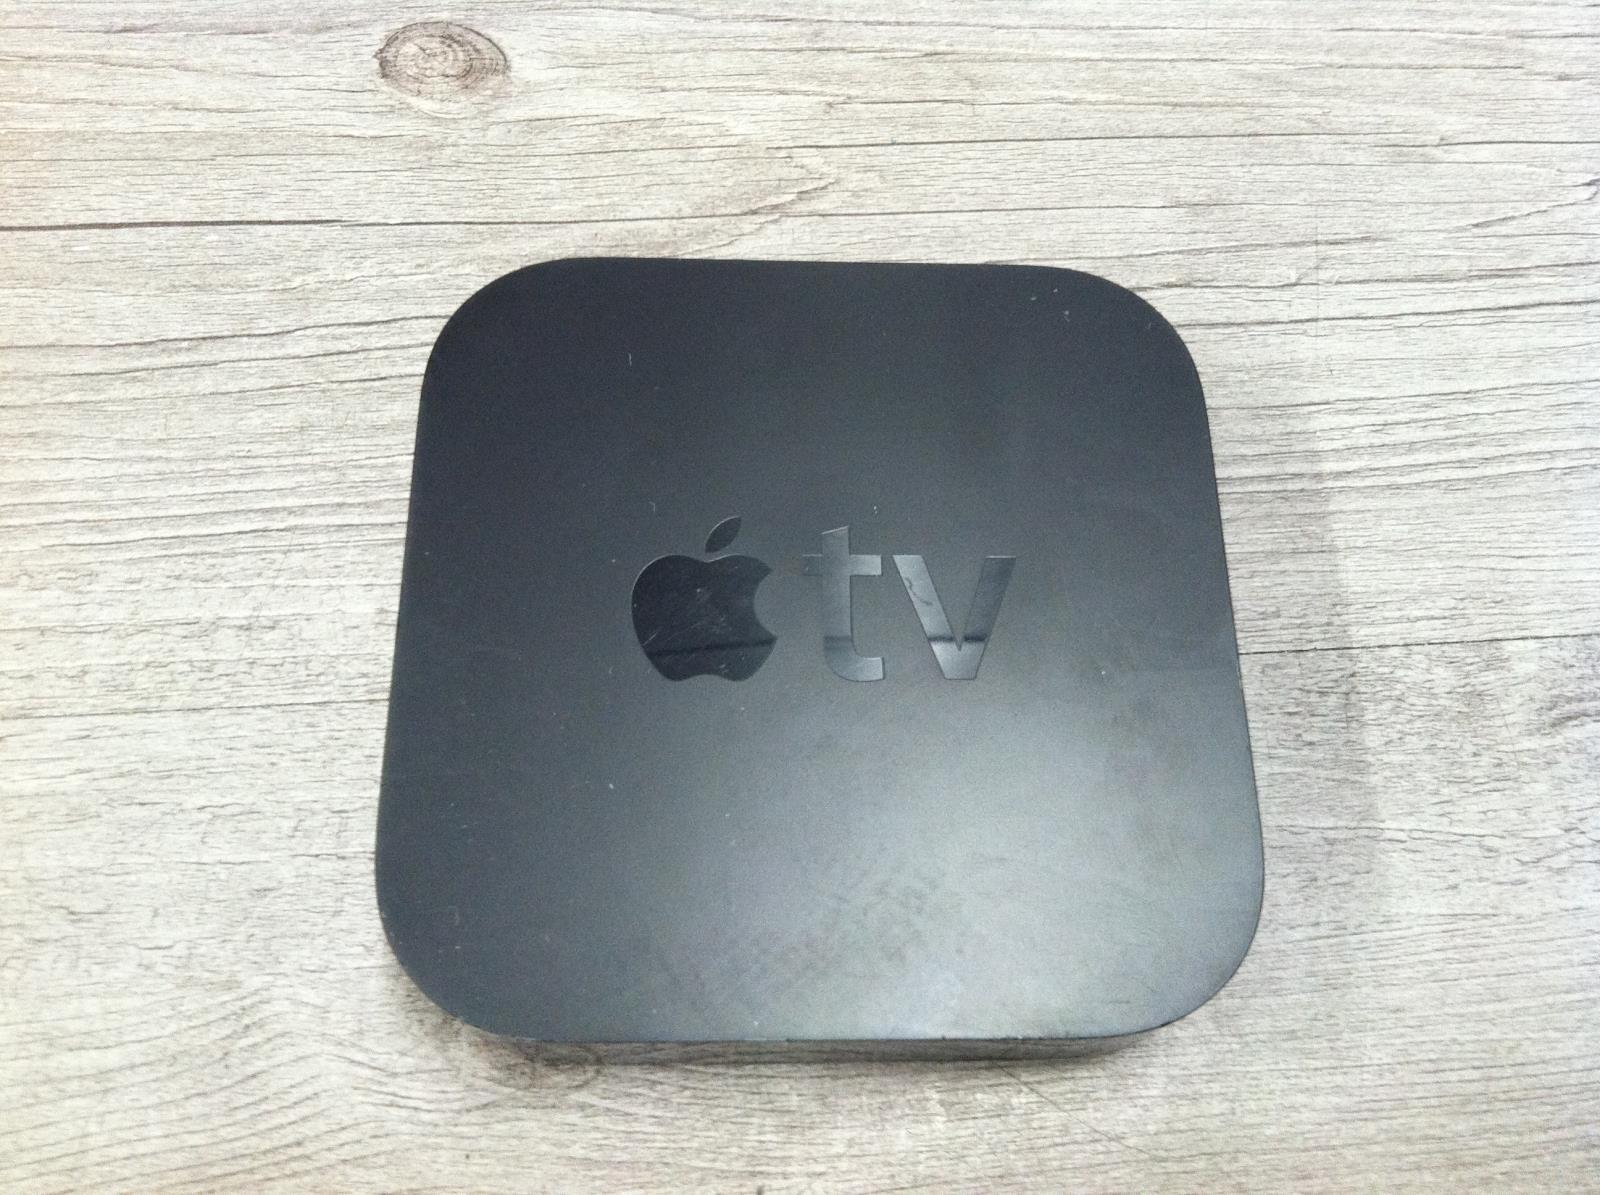 Apple TV Media Streamer 3rd Generation 8GB A1427 | eBay